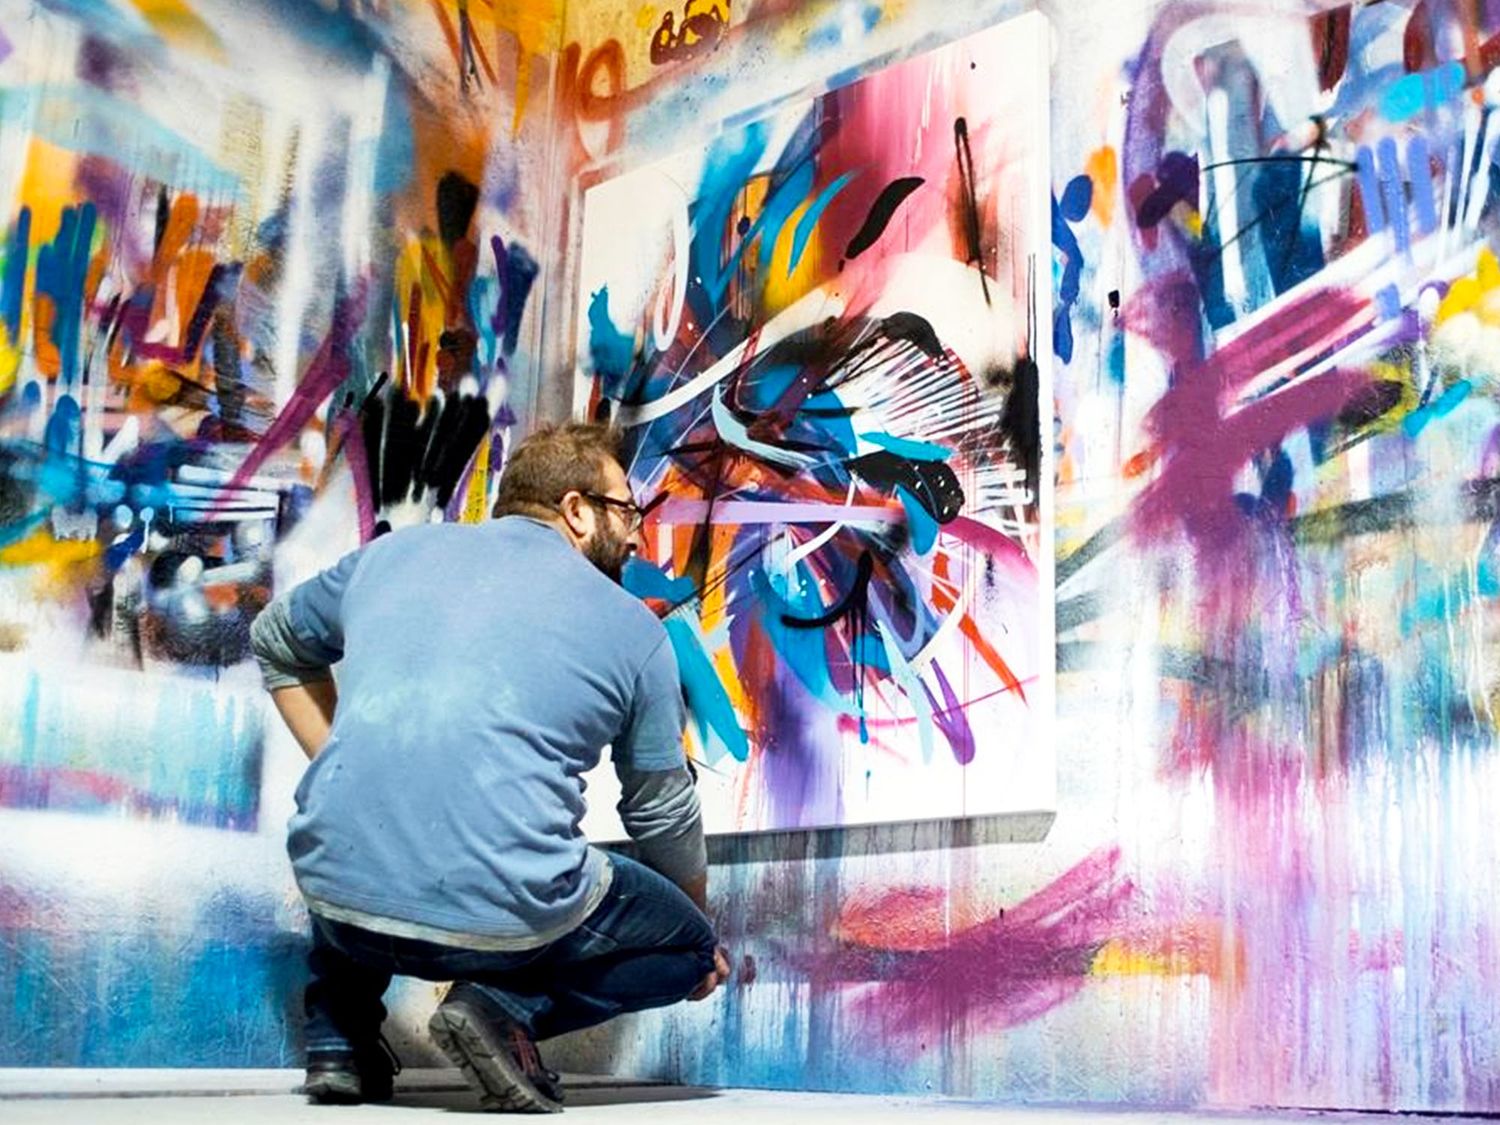 L'art d'Emanuele est un mélange entre graffiti et expressionnisme abstrait. Un trait personnel oscillant entre figuration et action painting qui ne laisse pas indifférent (©Giuseppe Torre).